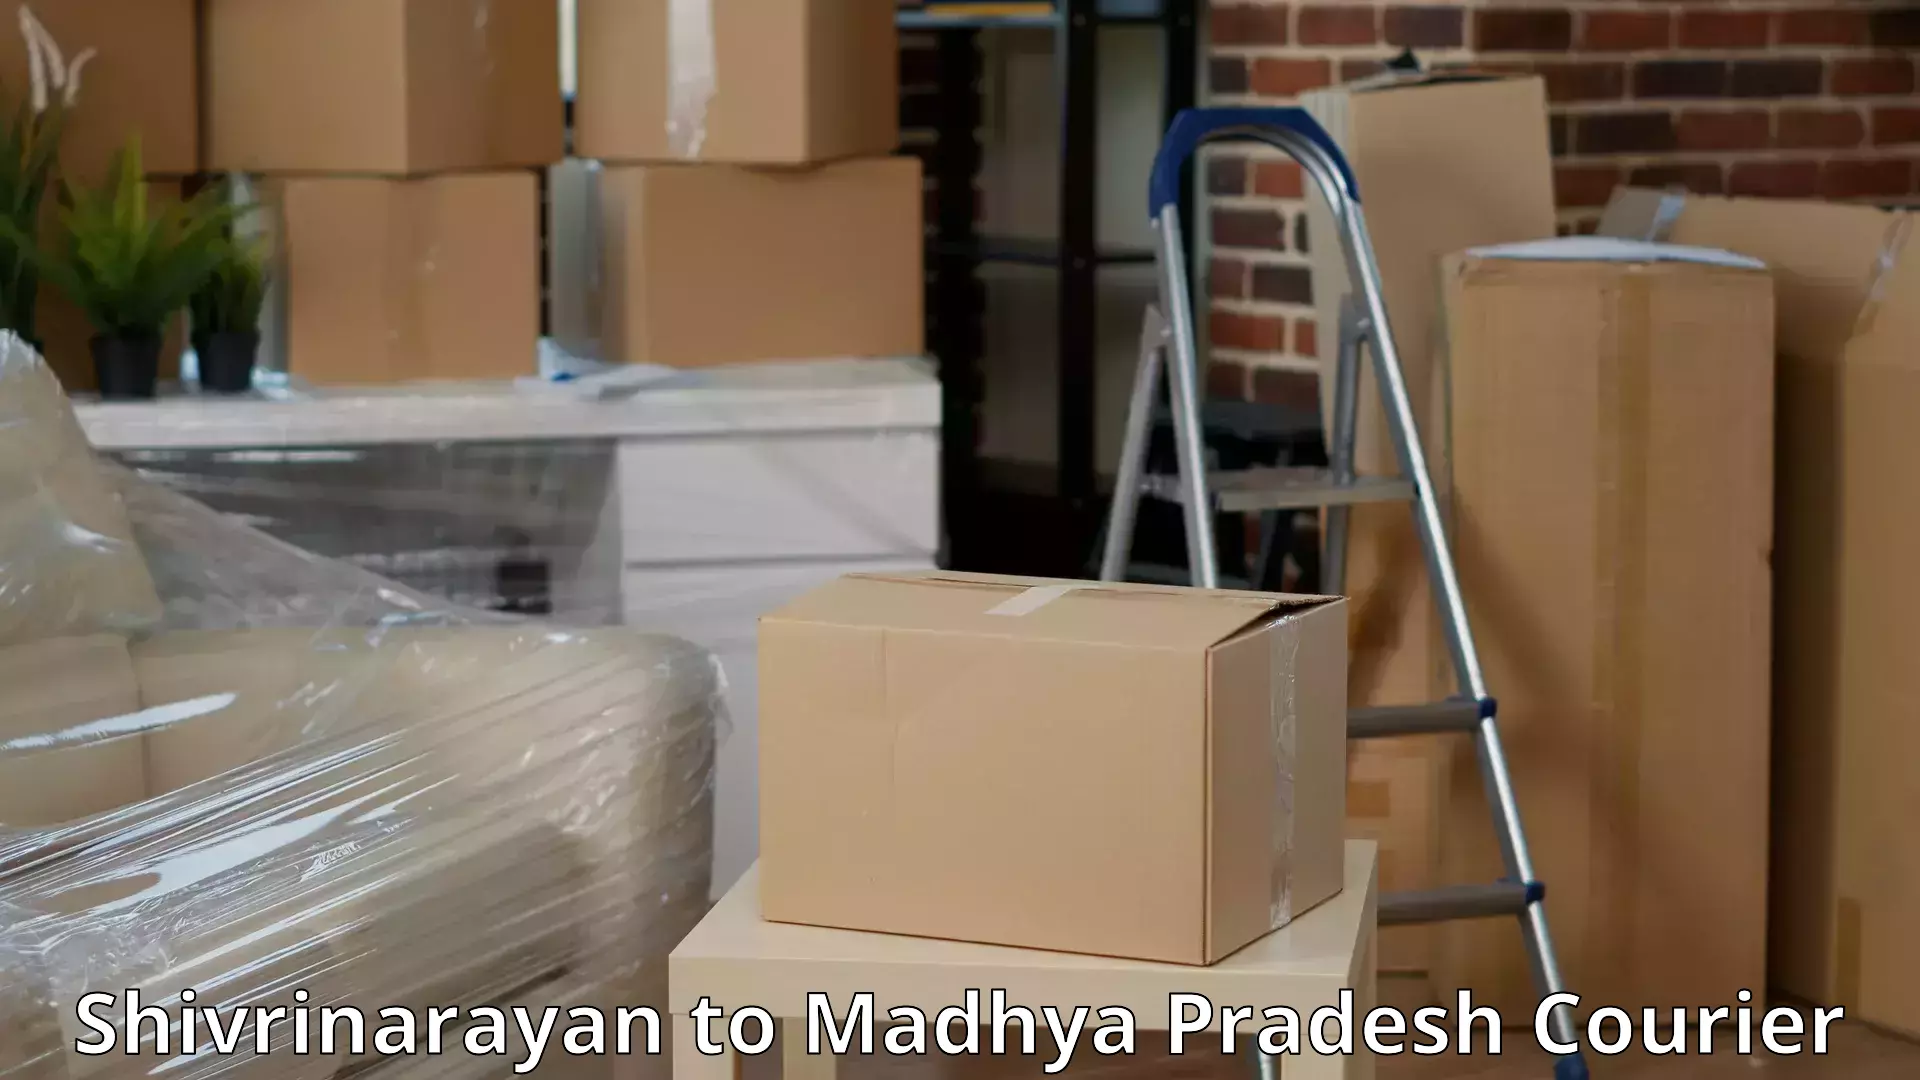 Full-service movers in Shivrinarayan to Gadarwara